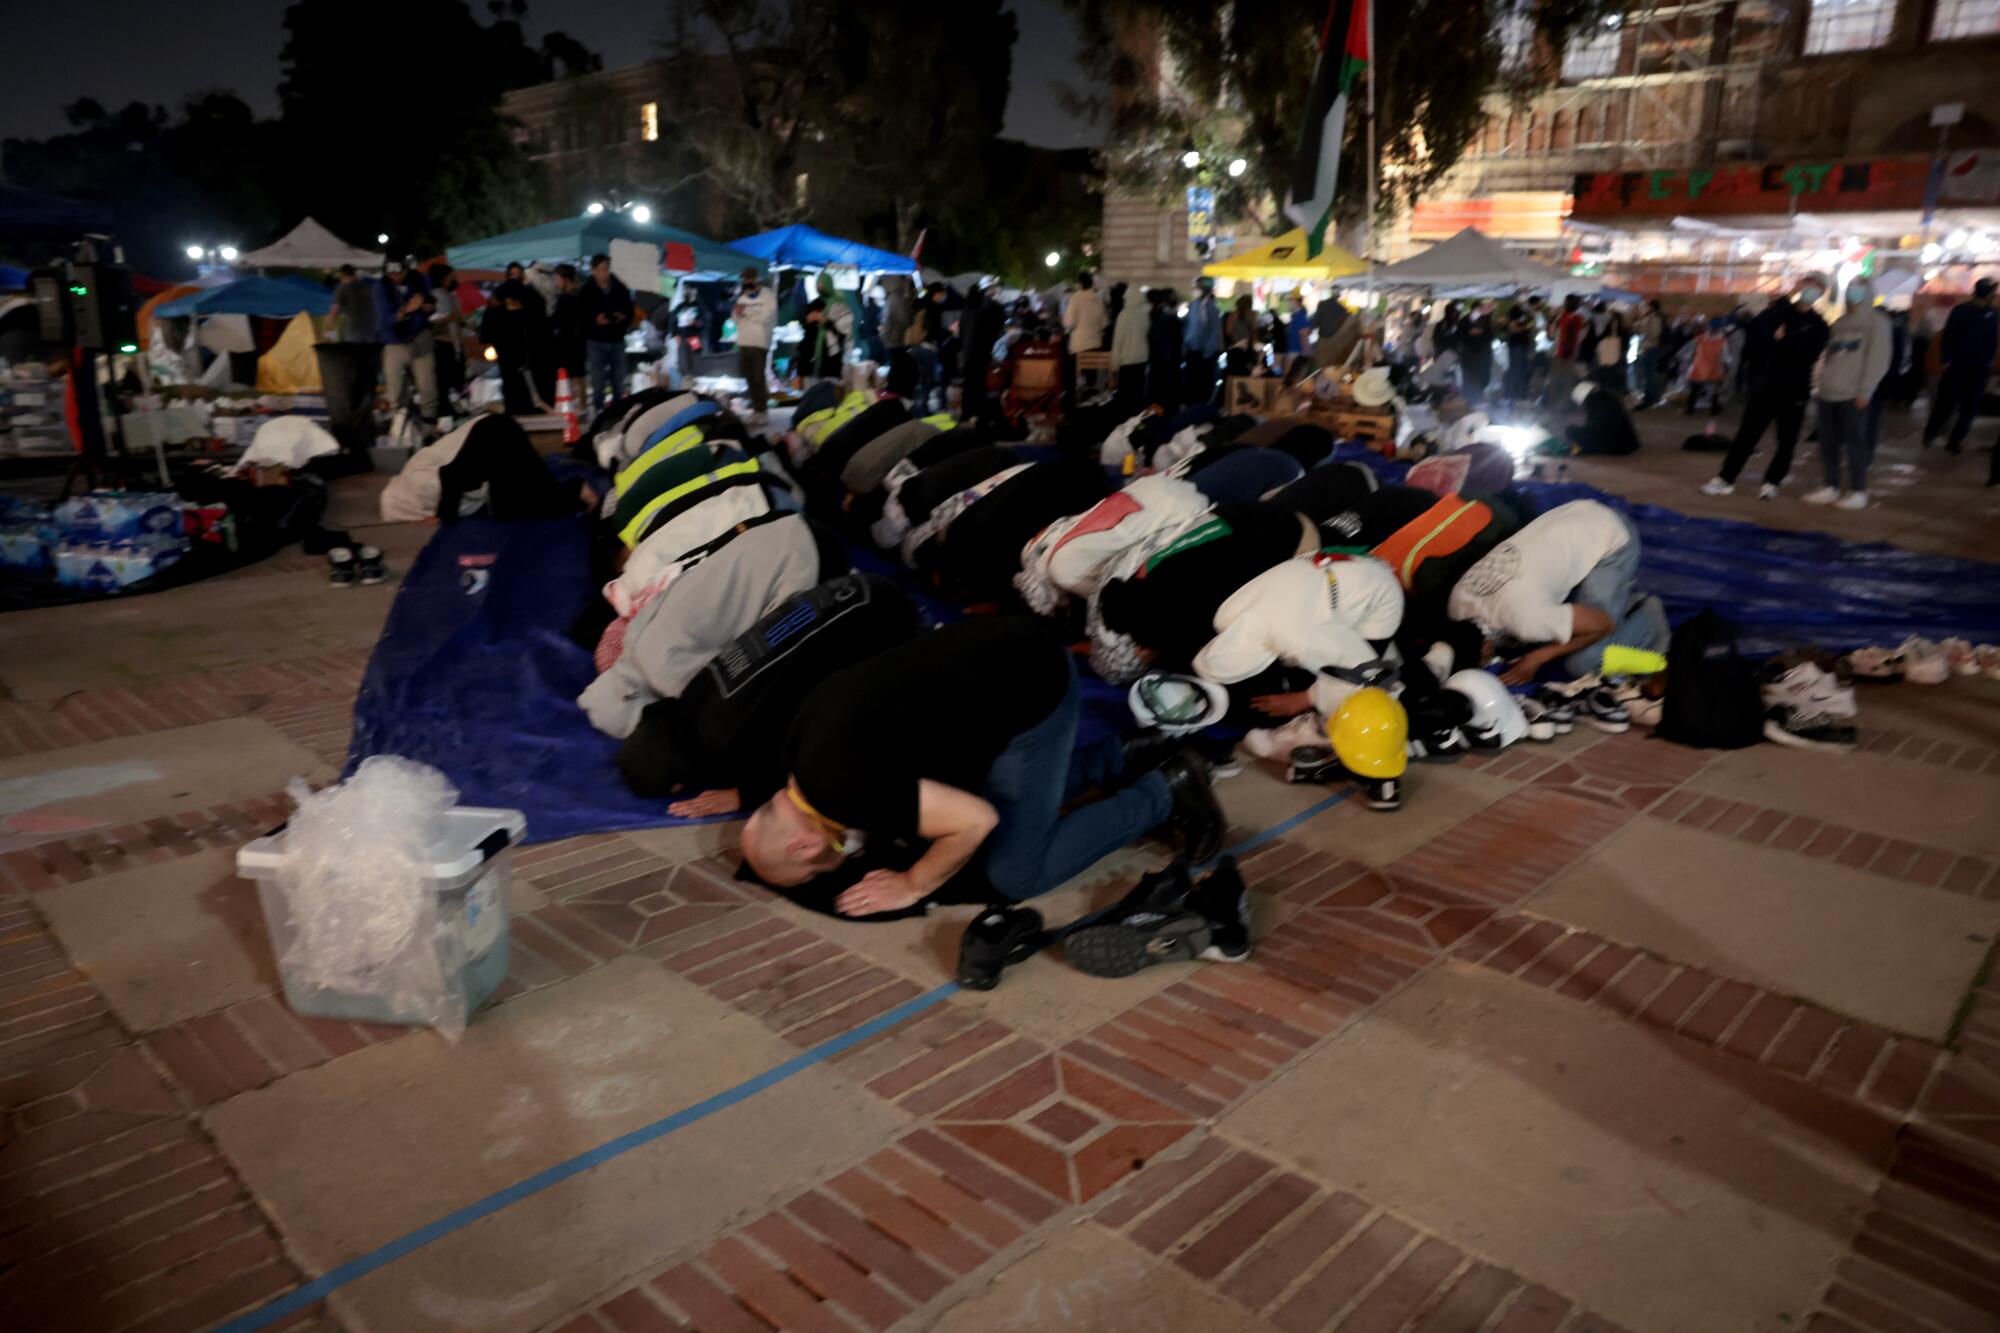 La gente se arrodilla, apoya la cabeza en el suelo y reza en la plaza.